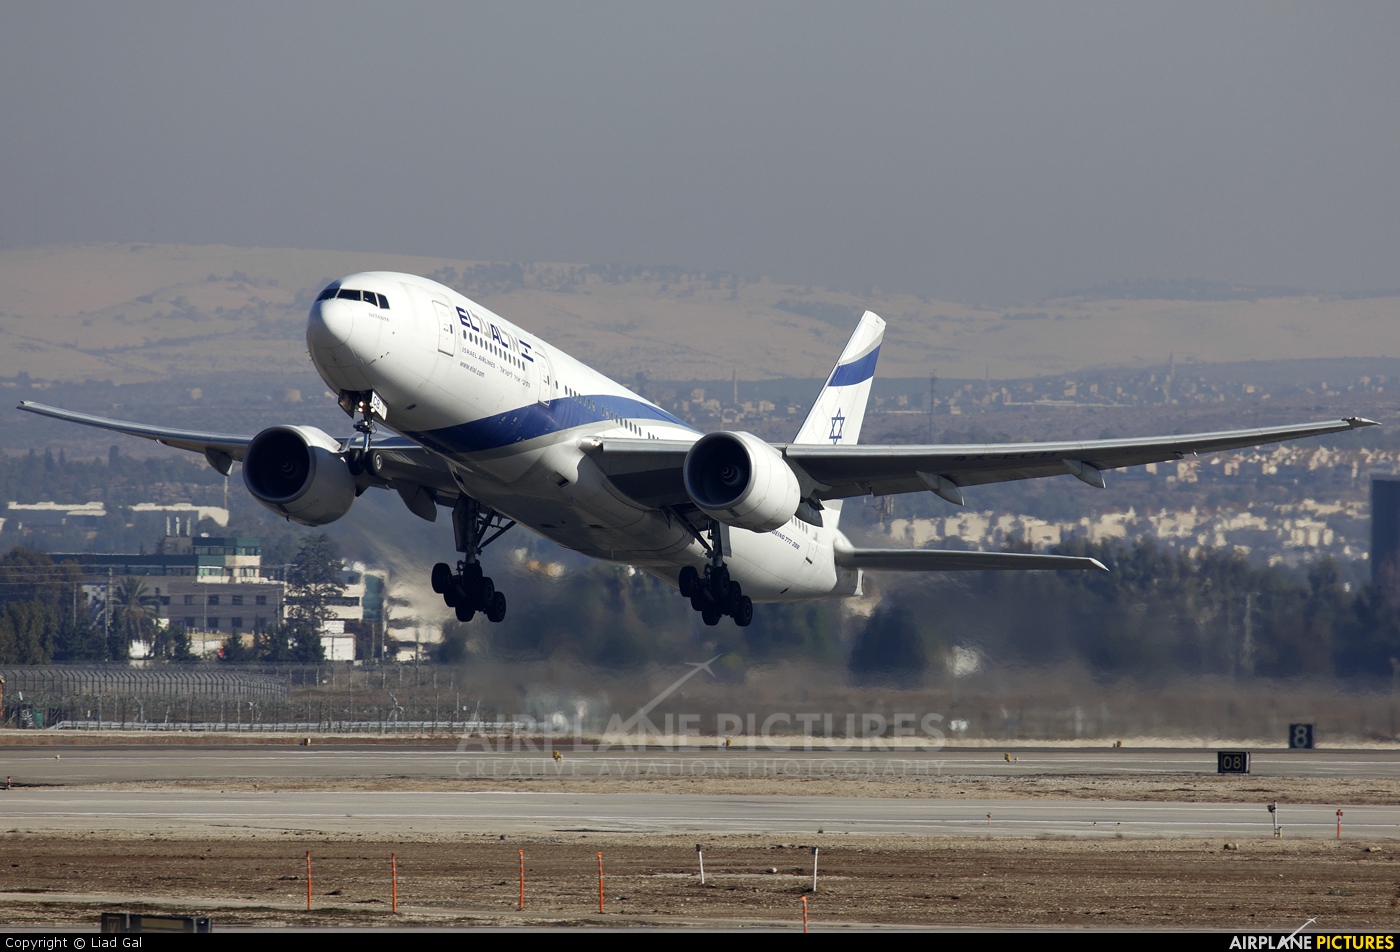 El Al Israel Airlines 4X-ECB aircraft at Tel Aviv - Ben Gurion